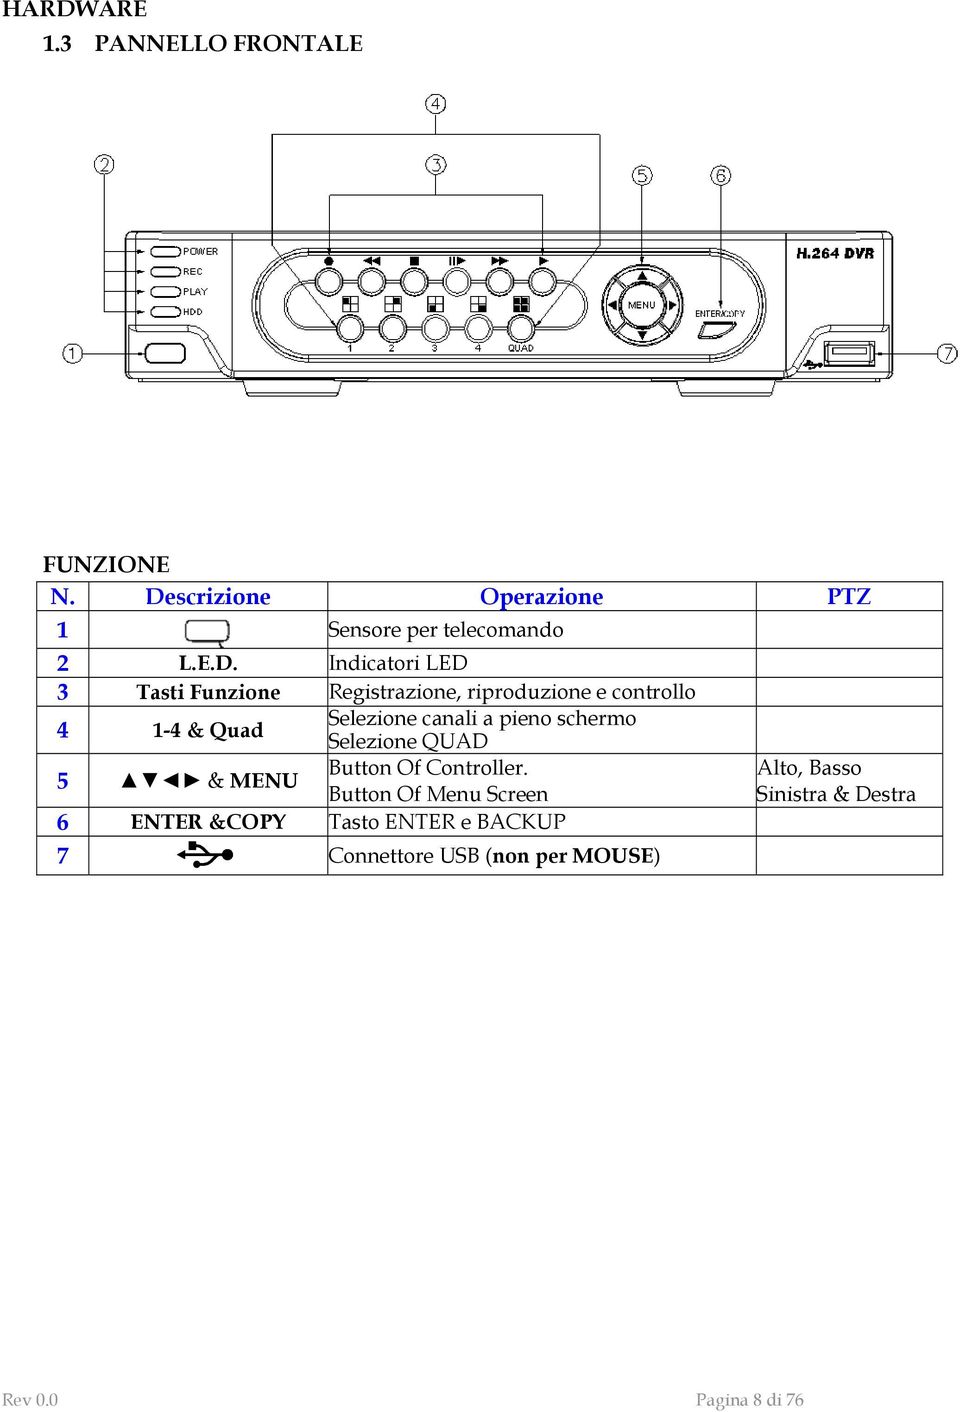 Indicatori LED 3 Tasti Funzione Registrazione, riproduzione e controllo 4 1-4 & Quad Selezione canali